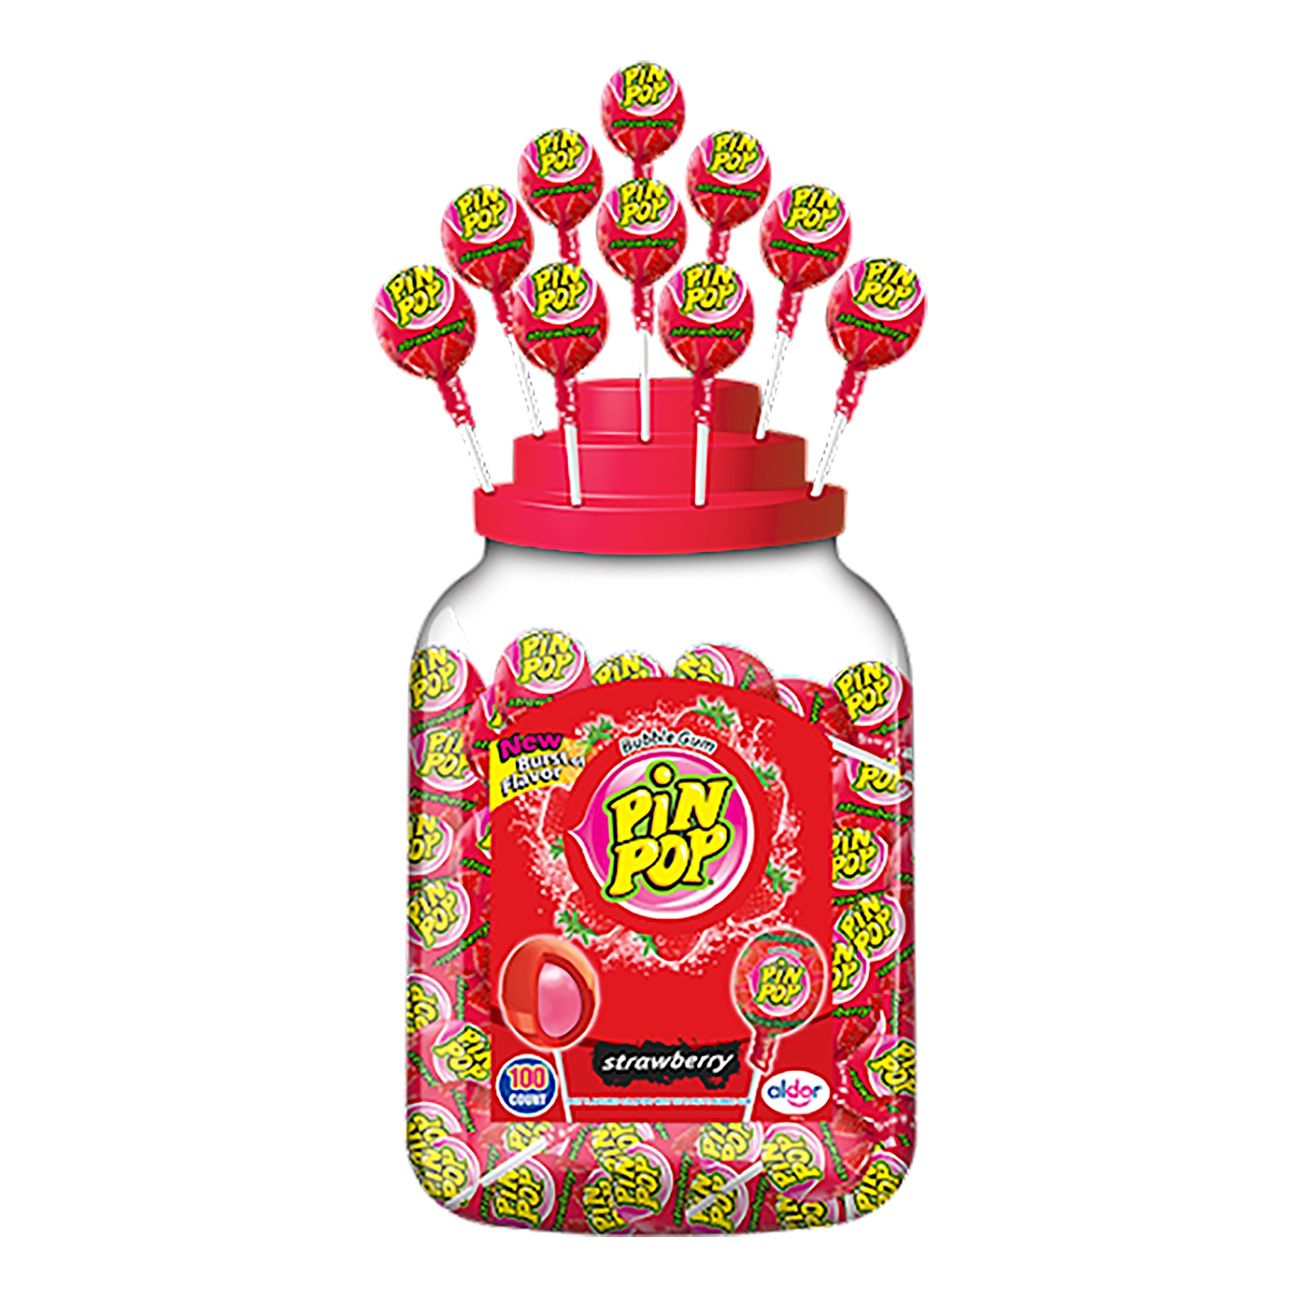 pin-pop-jordgubb-19k-86275-1